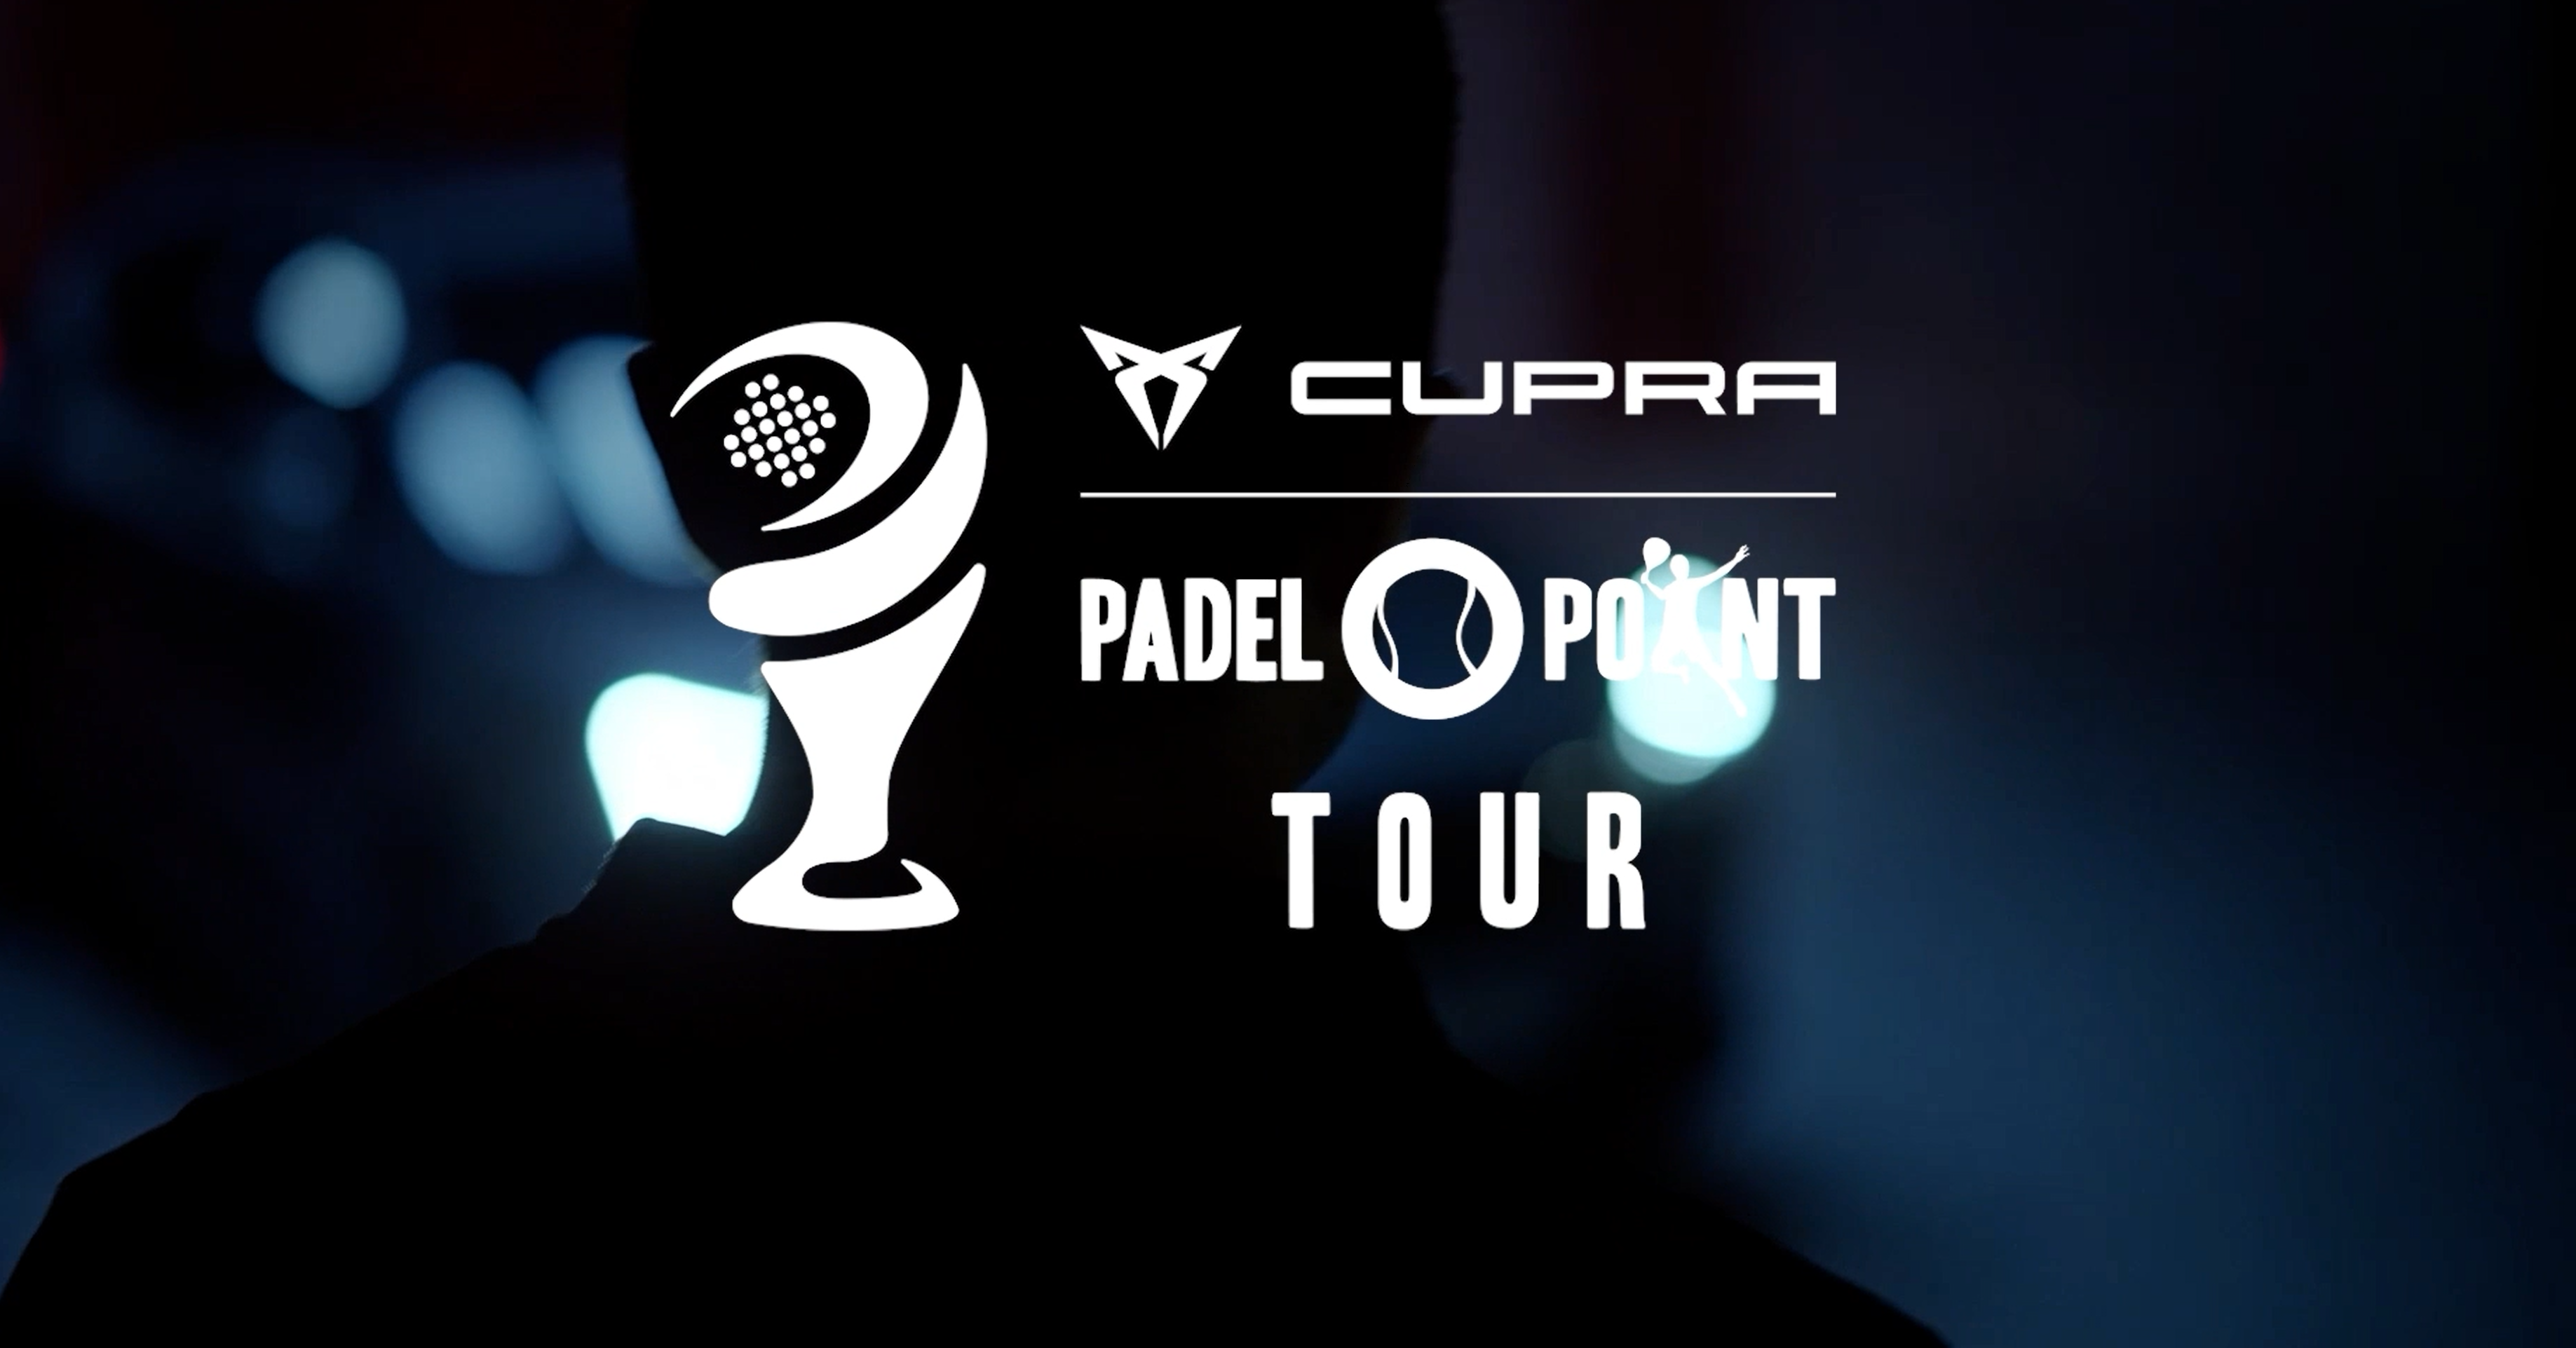 Cupra Padel-Point Tour Rennes – En lockande utställning!